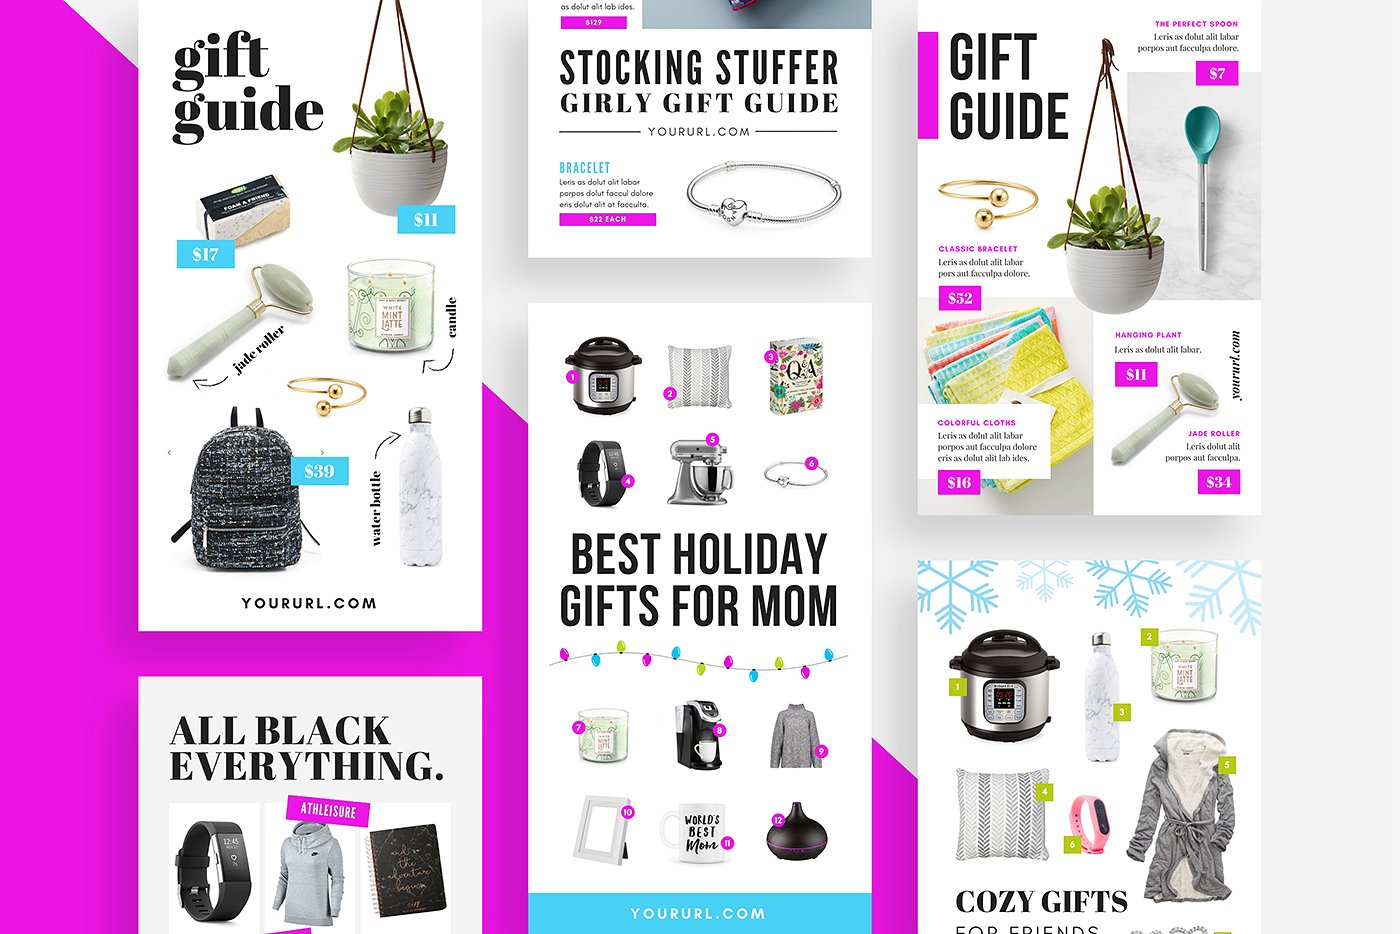 礼品指南社交媒体模板蚂蚁素材精选 Gift Guide Pinterest Templates [psd]插图(3)